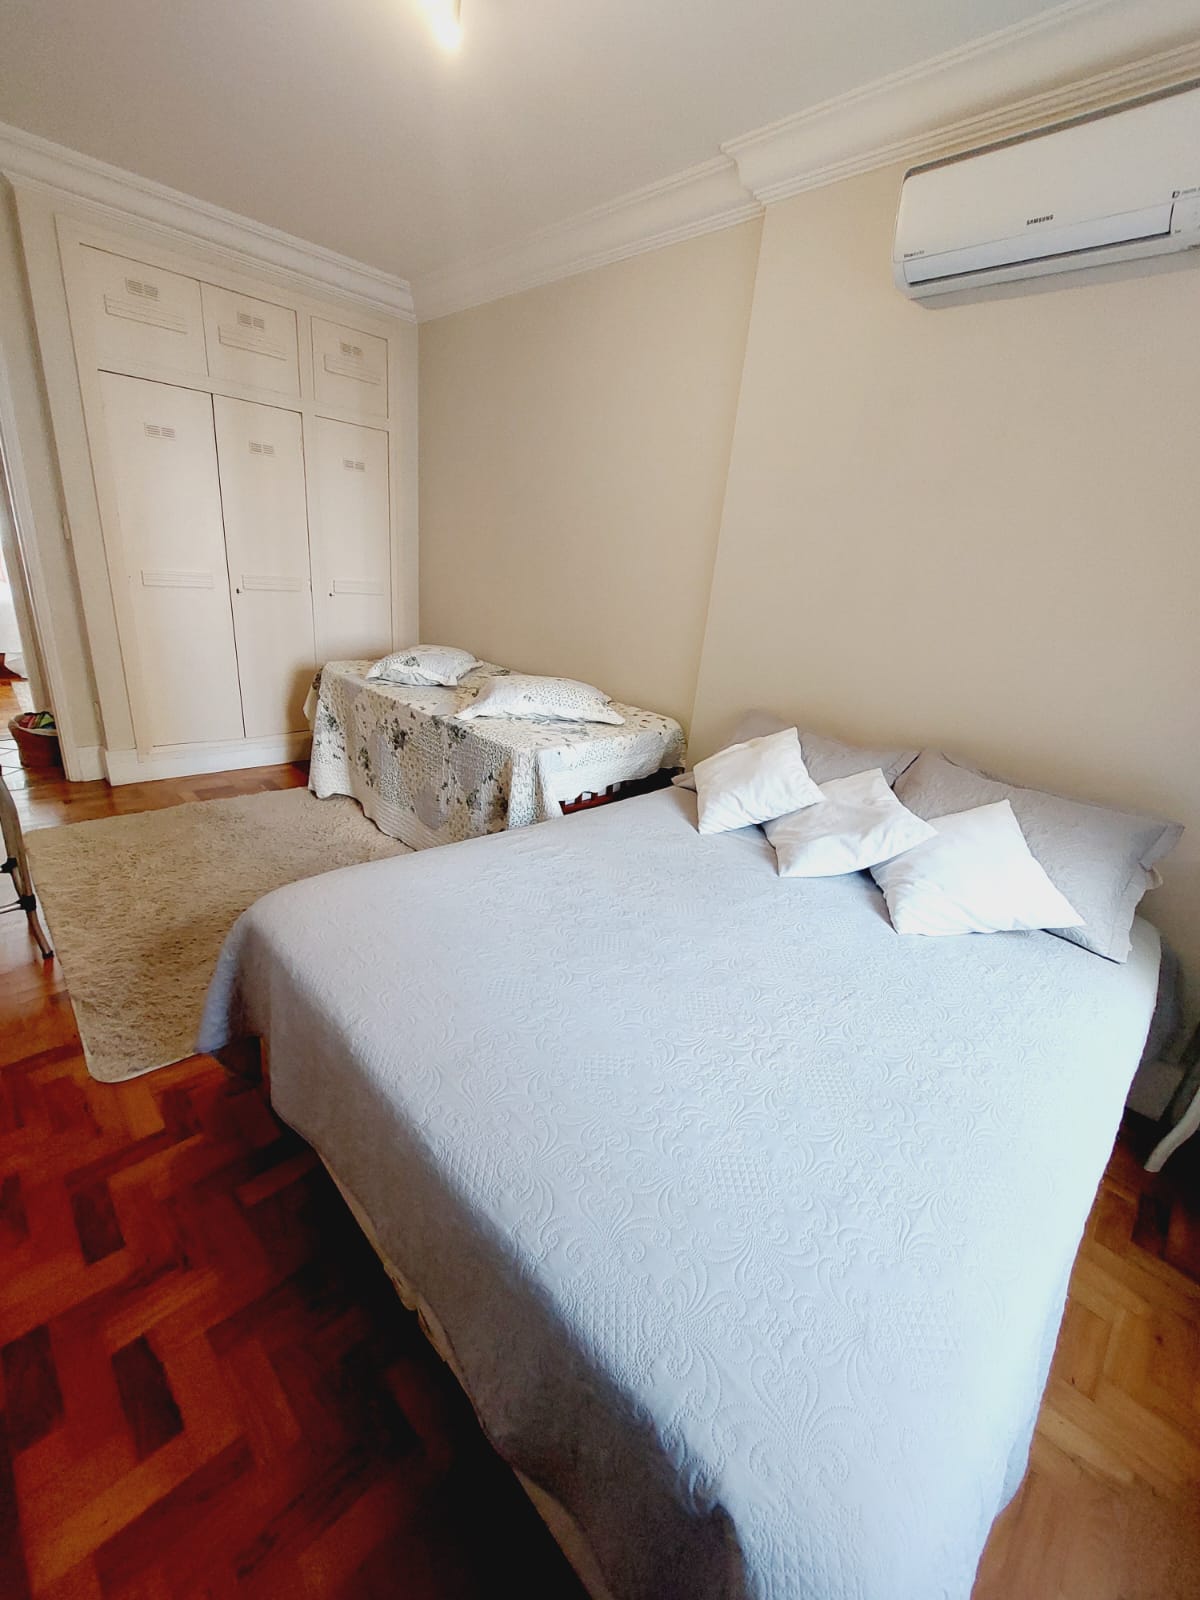 Foto do Imóvel - Lindo Apartamento 03 dorms no Coração do Gonzaga. c/ vaga demarcada.